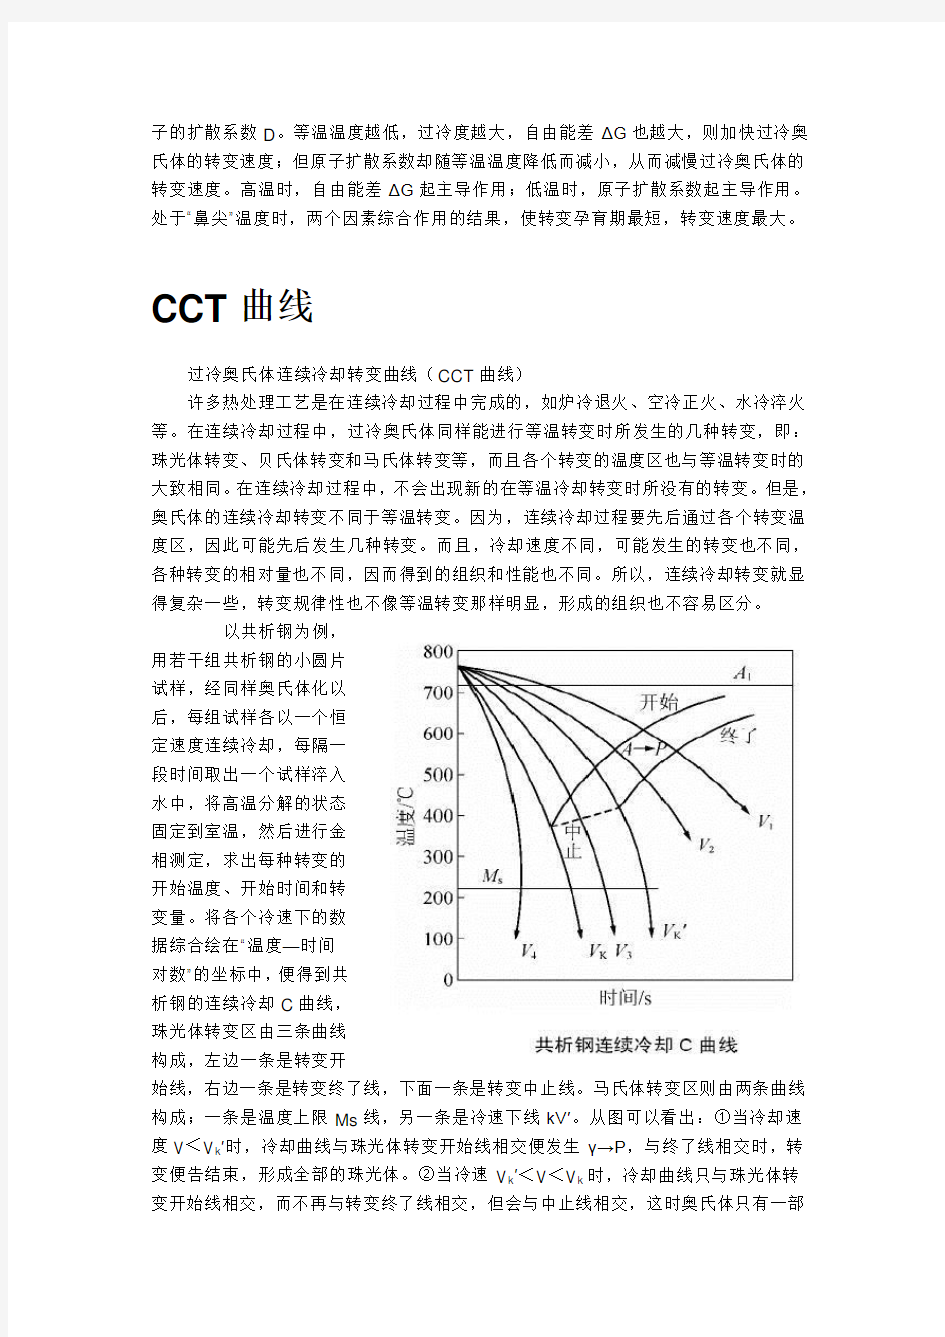 共析钢TTT_CCT图分析